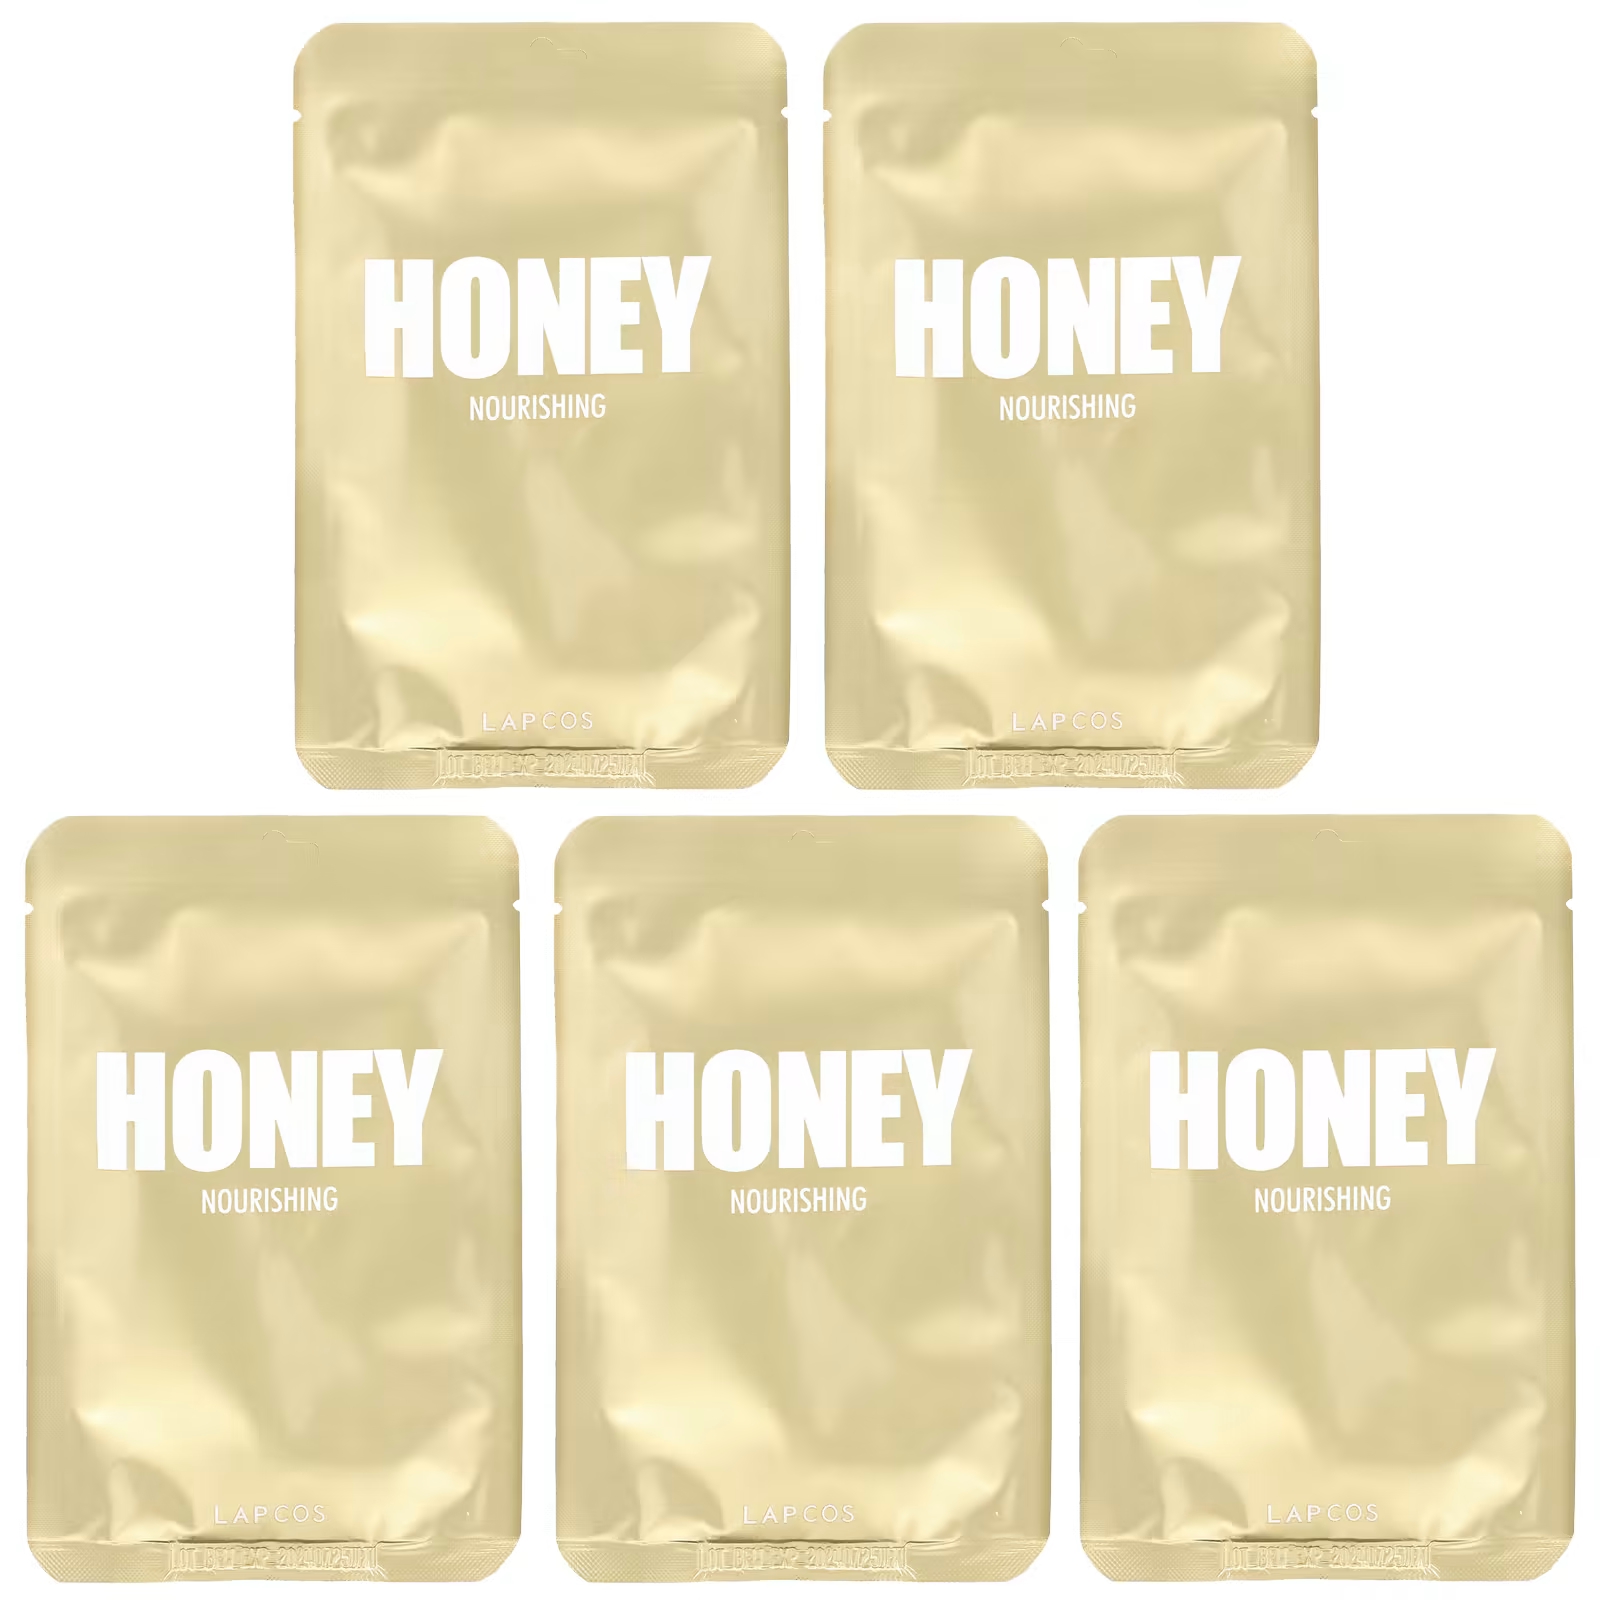 маска для губ ebug с экстрактом меда 8 г Набор питательных тканевых масок Lapcos Honey Beauty, 5 листов по 0,91 жидкой унции (27 мл) каждый